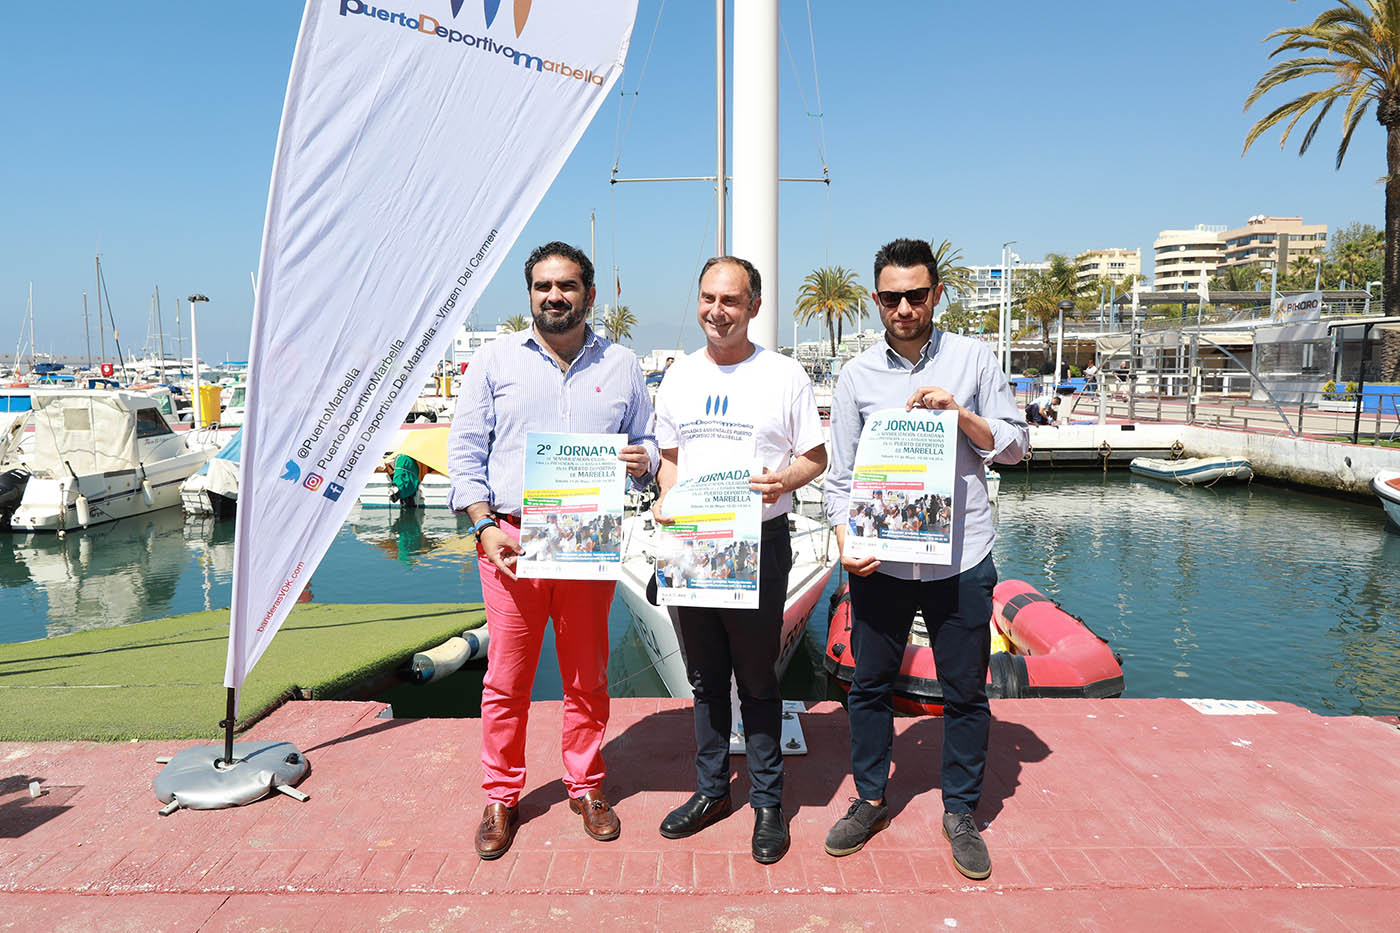 Ayuntamiento y Aula del Mar organizan una nueva jornada en el Puerto Deportivo de Marbella para sensibilizar sobre el cuidado del medioambiente marino